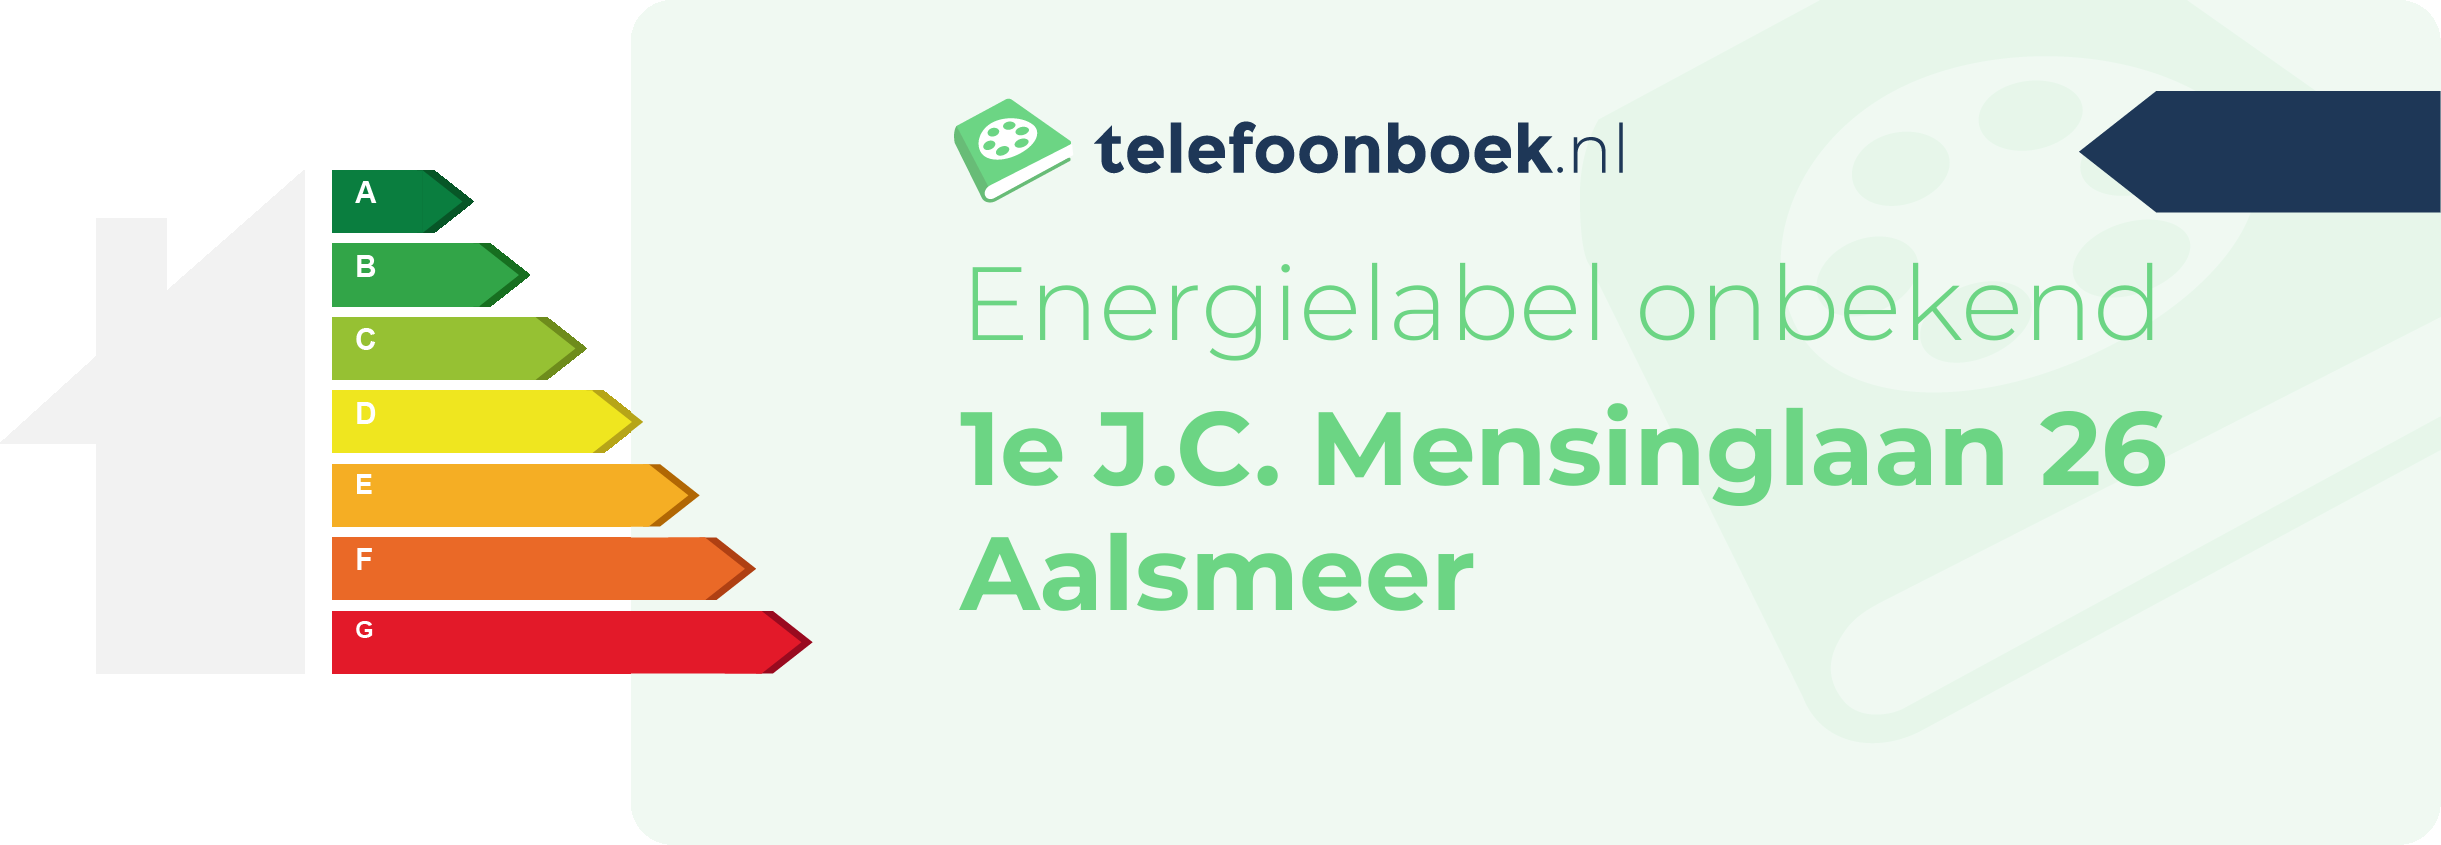 Energielabel 1e J.C. Mensinglaan 26 Aalsmeer